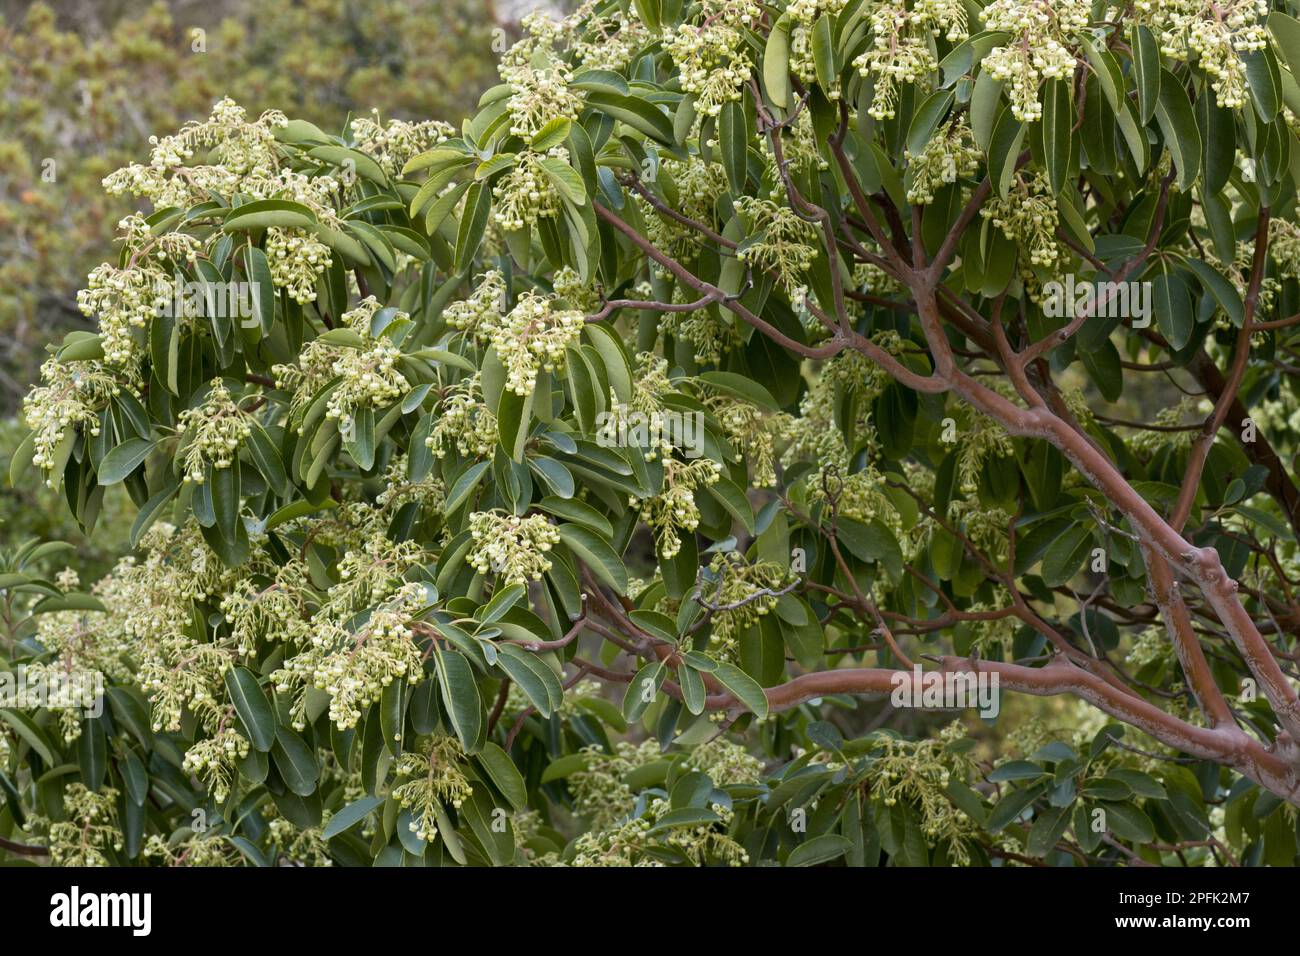 Fraise grecque (Arbutus andrachne), famille de la bruyère, Floraison de l'arbre de la fraise de l'est, Chios, Grèce Banque D'Images